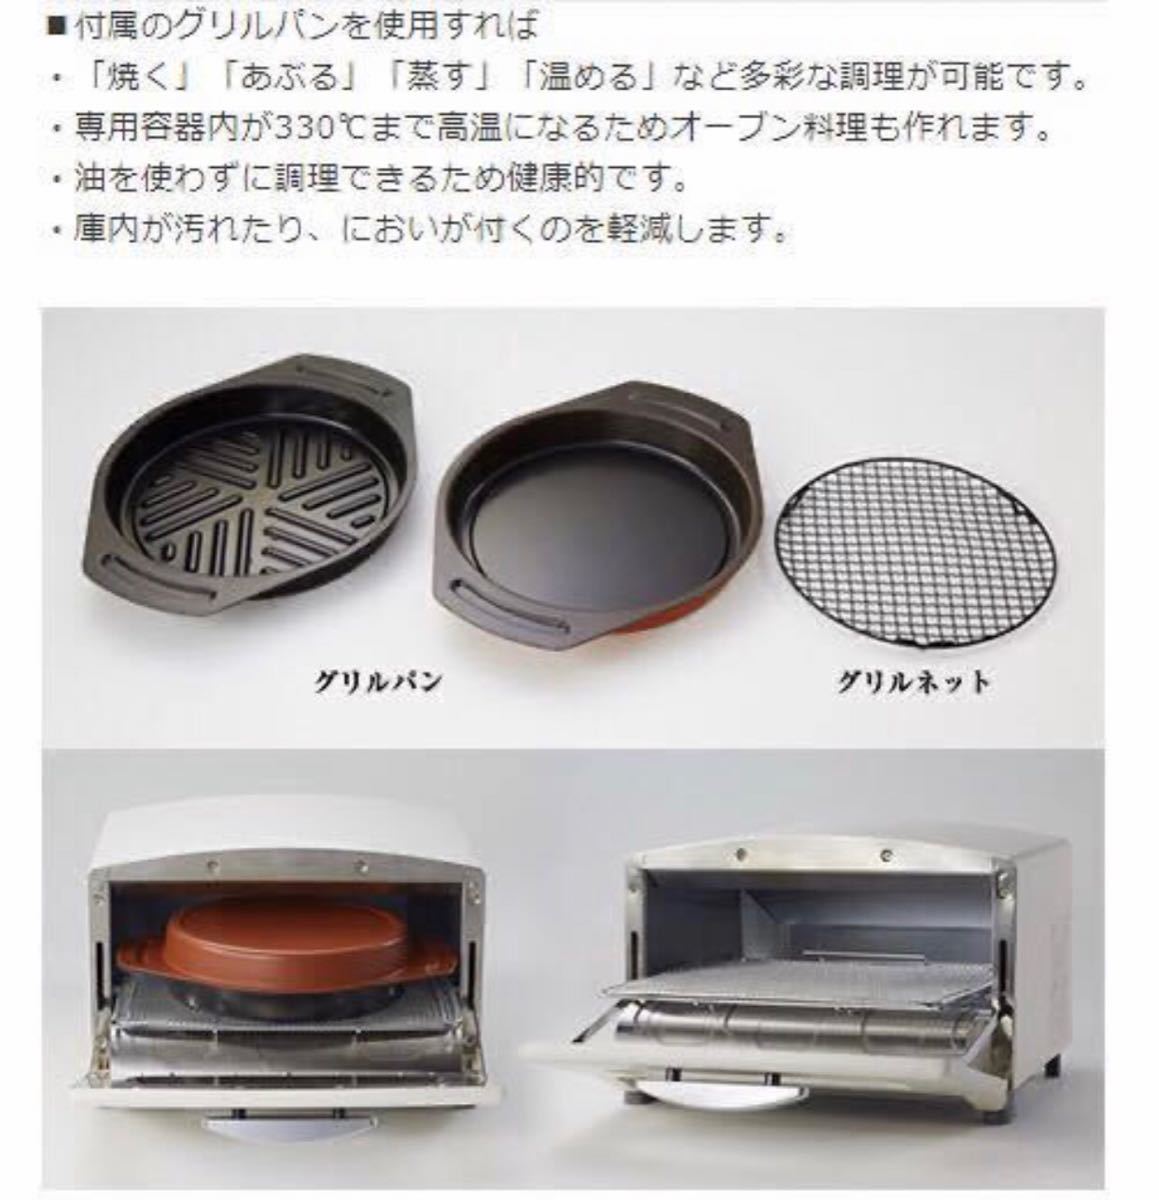 新品 アラジン 4枚焼 グラファイト グリル&トースター オーブントースター 